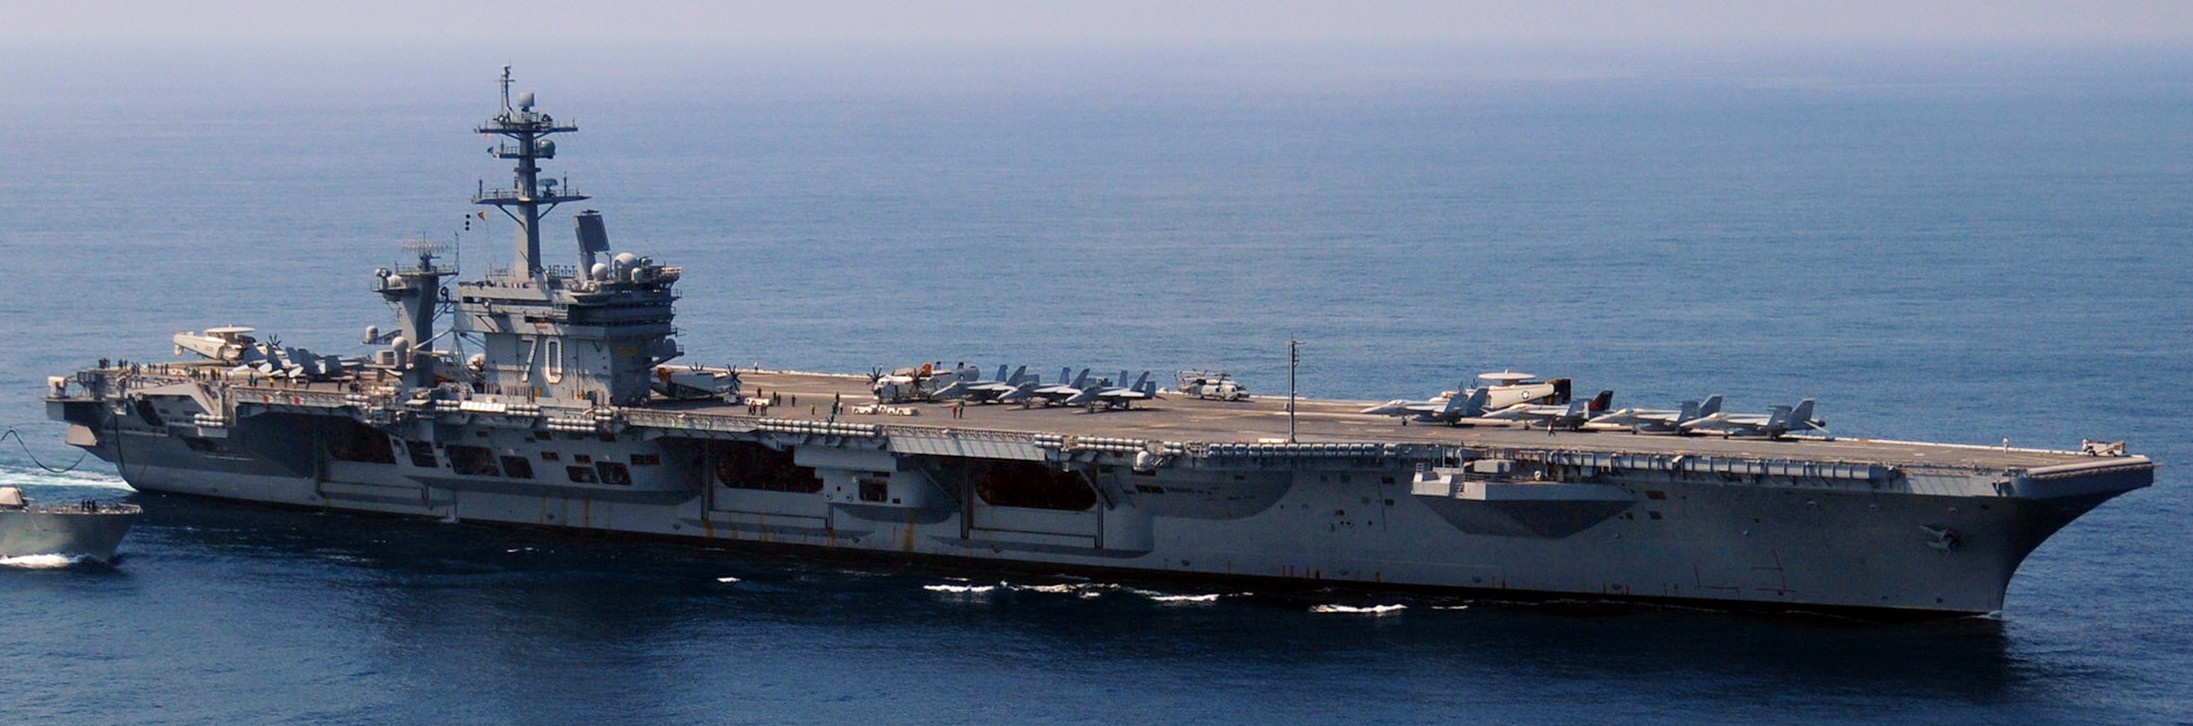 cvn-70 uss carl vinson nimitz class aircraft carrier us navy 144